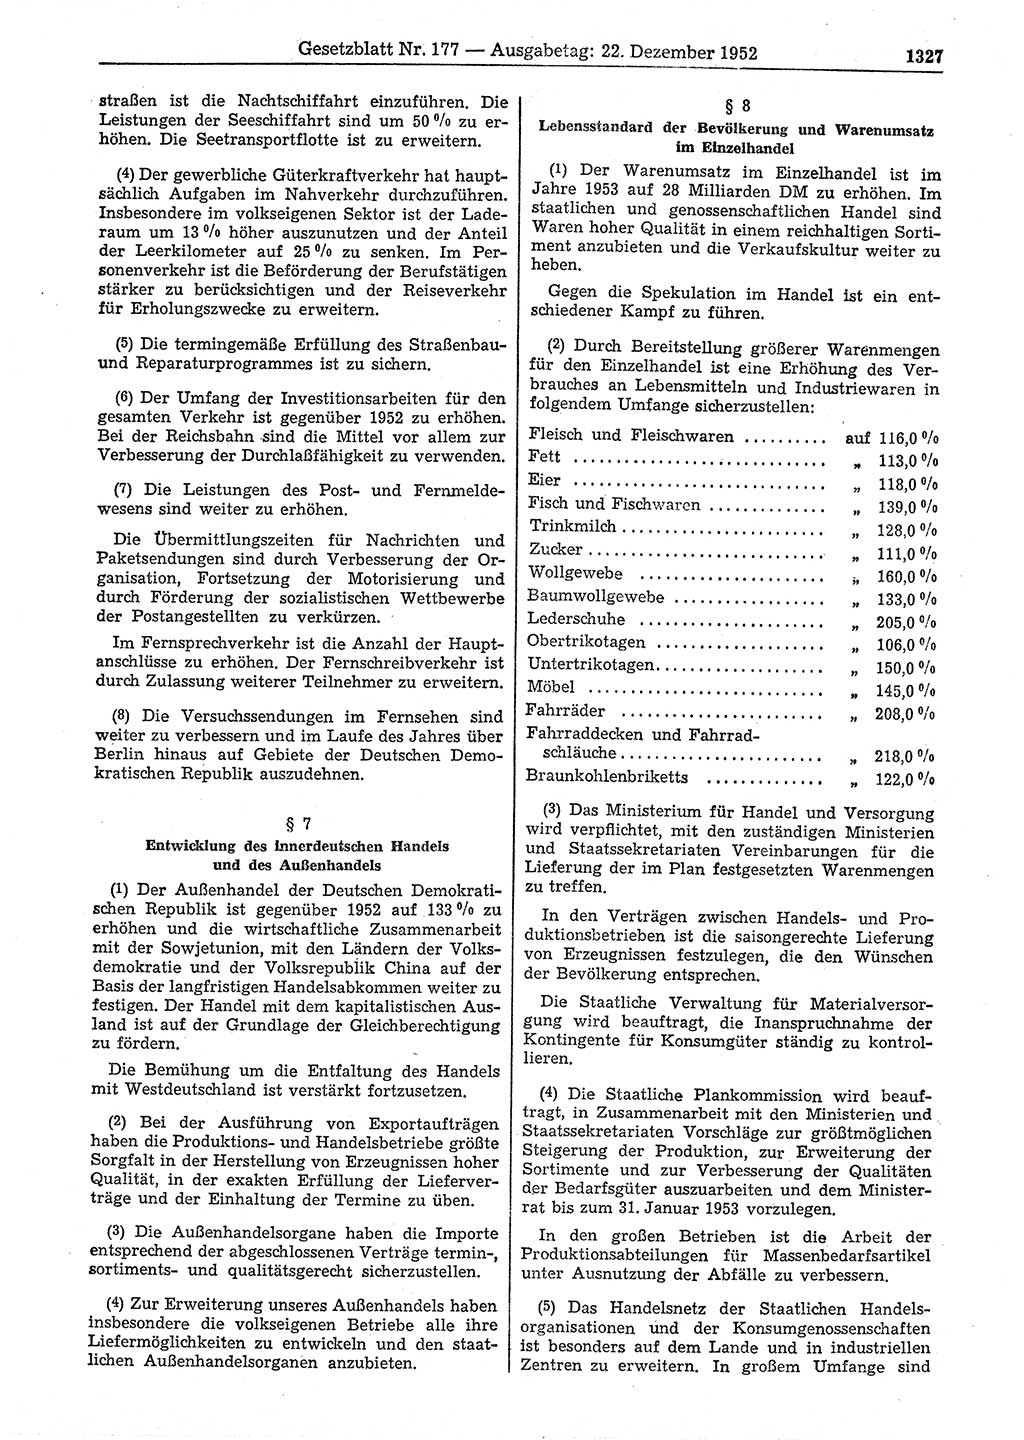 Gesetzblatt (GBl.) der Deutschen Demokratischen Republik (DDR) 1952, Seite 1327 (GBl. DDR 1952, S. 1327)